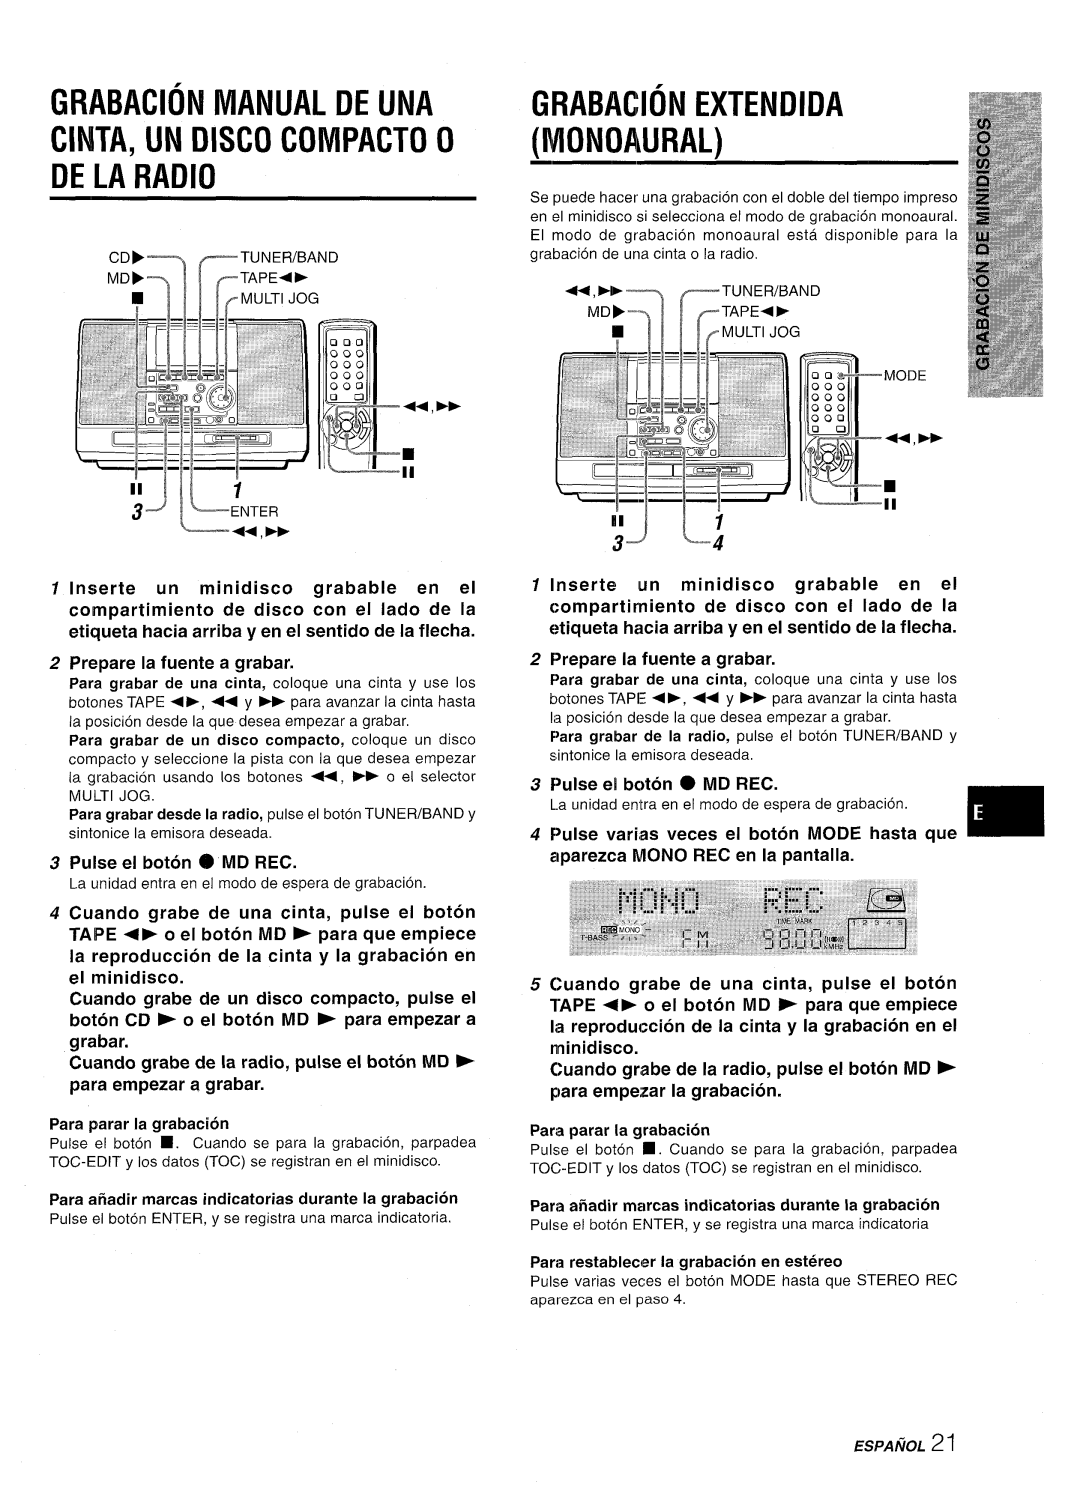 Aiwa CSD-MD50 manual 3~+m, Grabacion Manual De Una Cinta, Un Disco Compacto O De La Radio, Grabacion Extendida Monoaural 